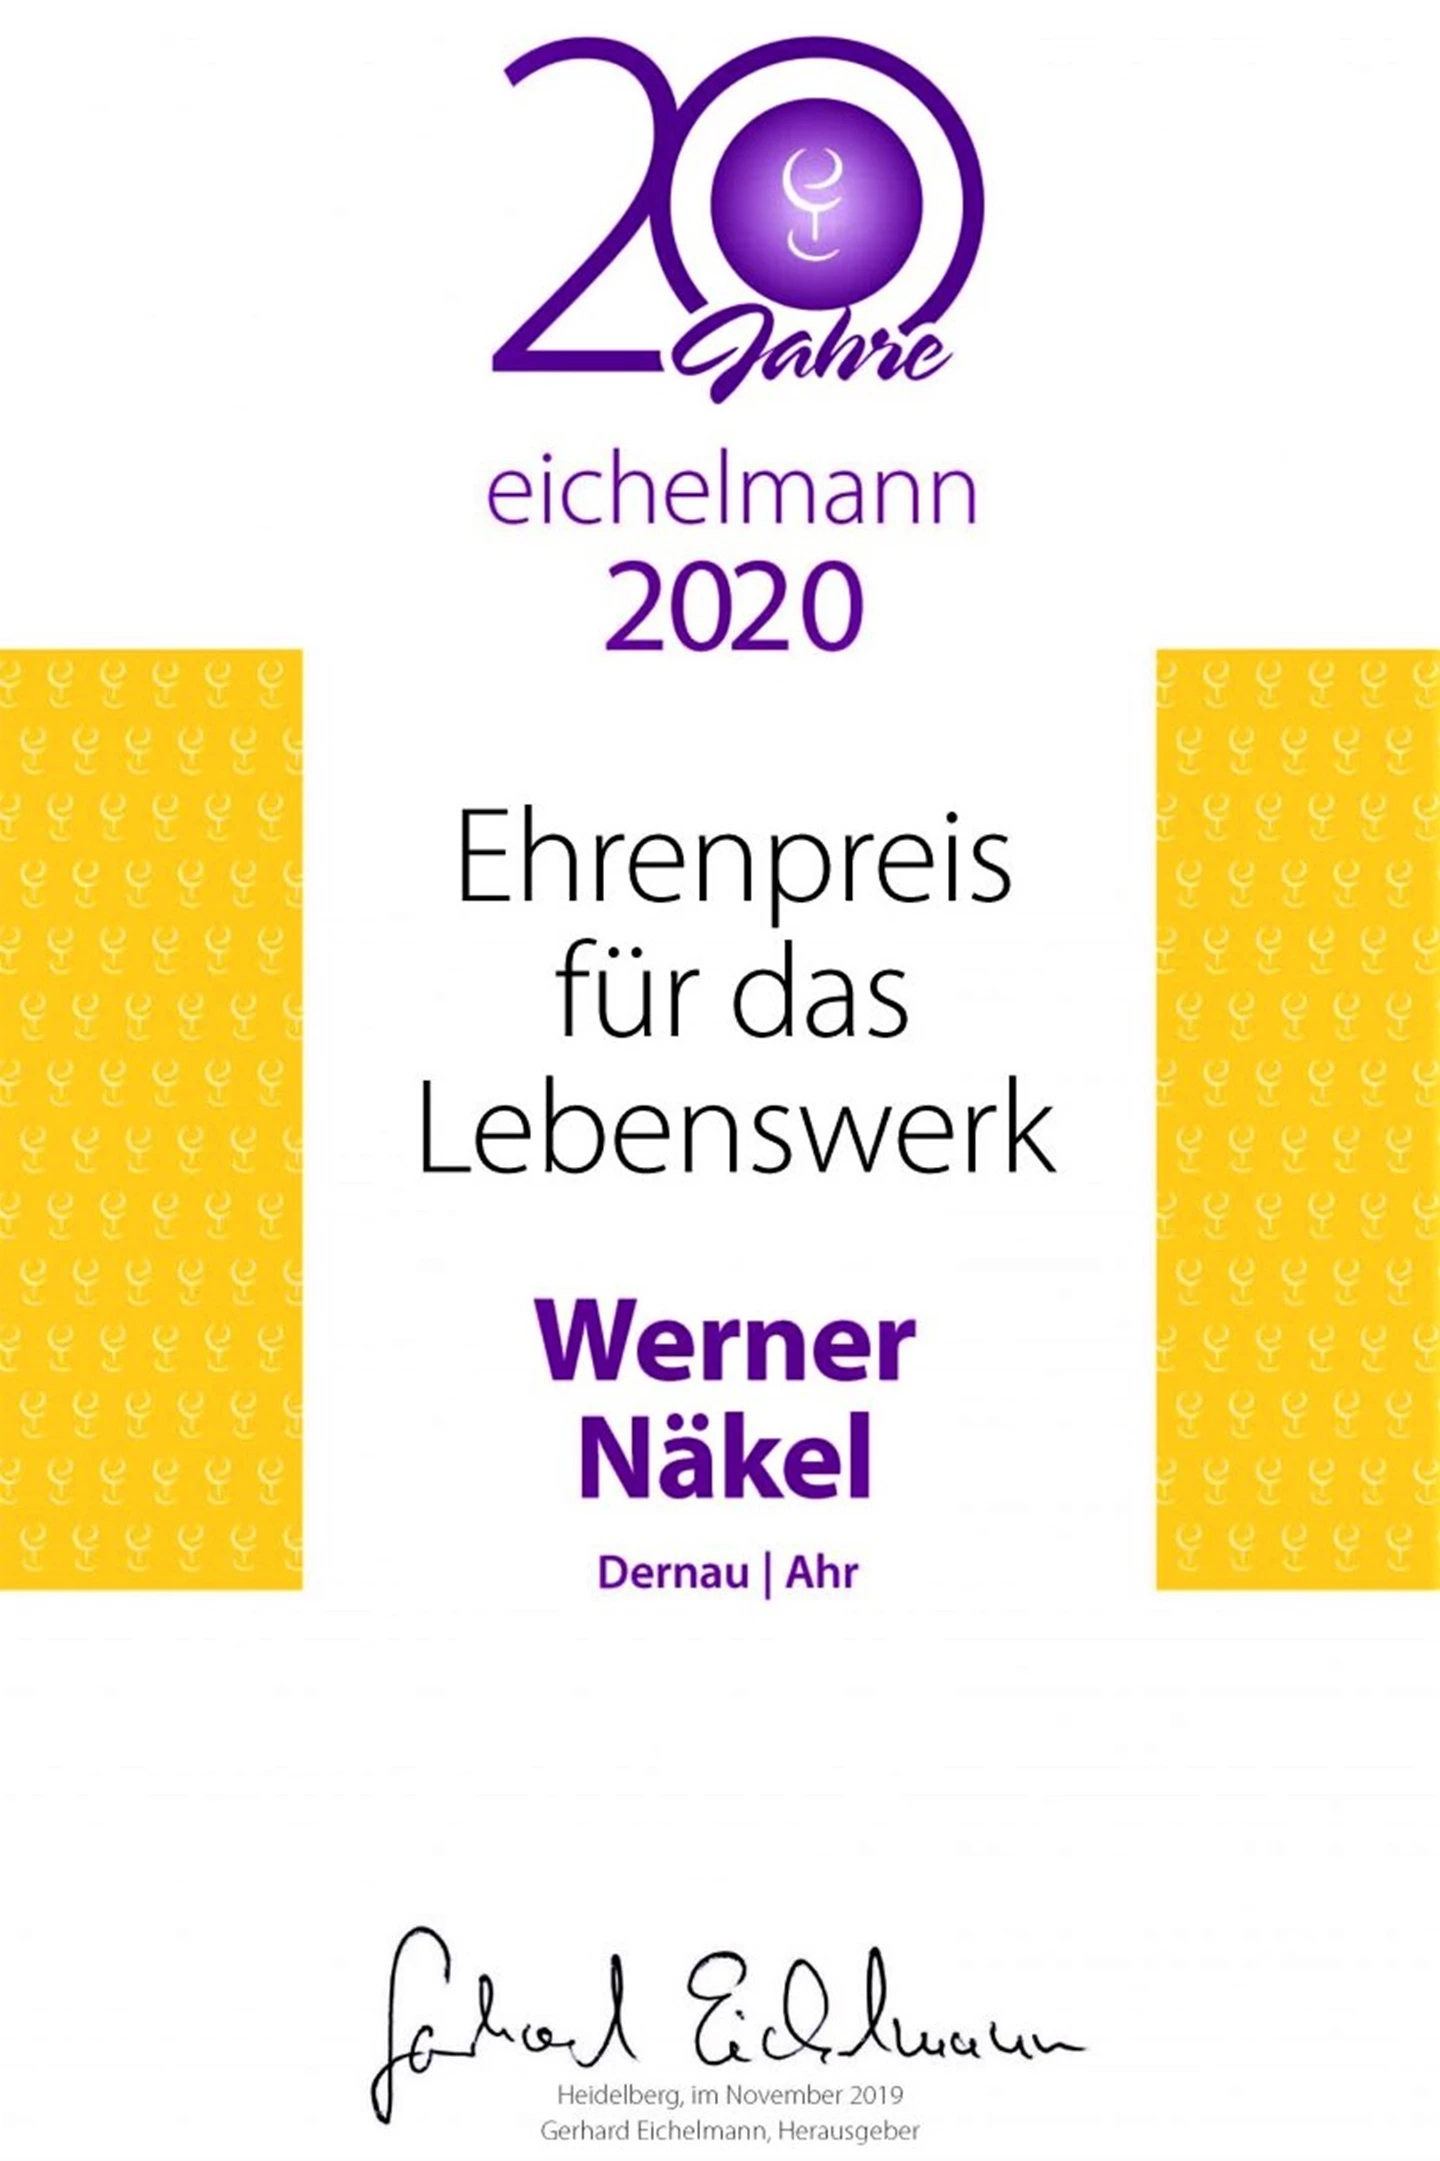 Meyer-Nakel-Ehrenpreis-2020-Eichelmann